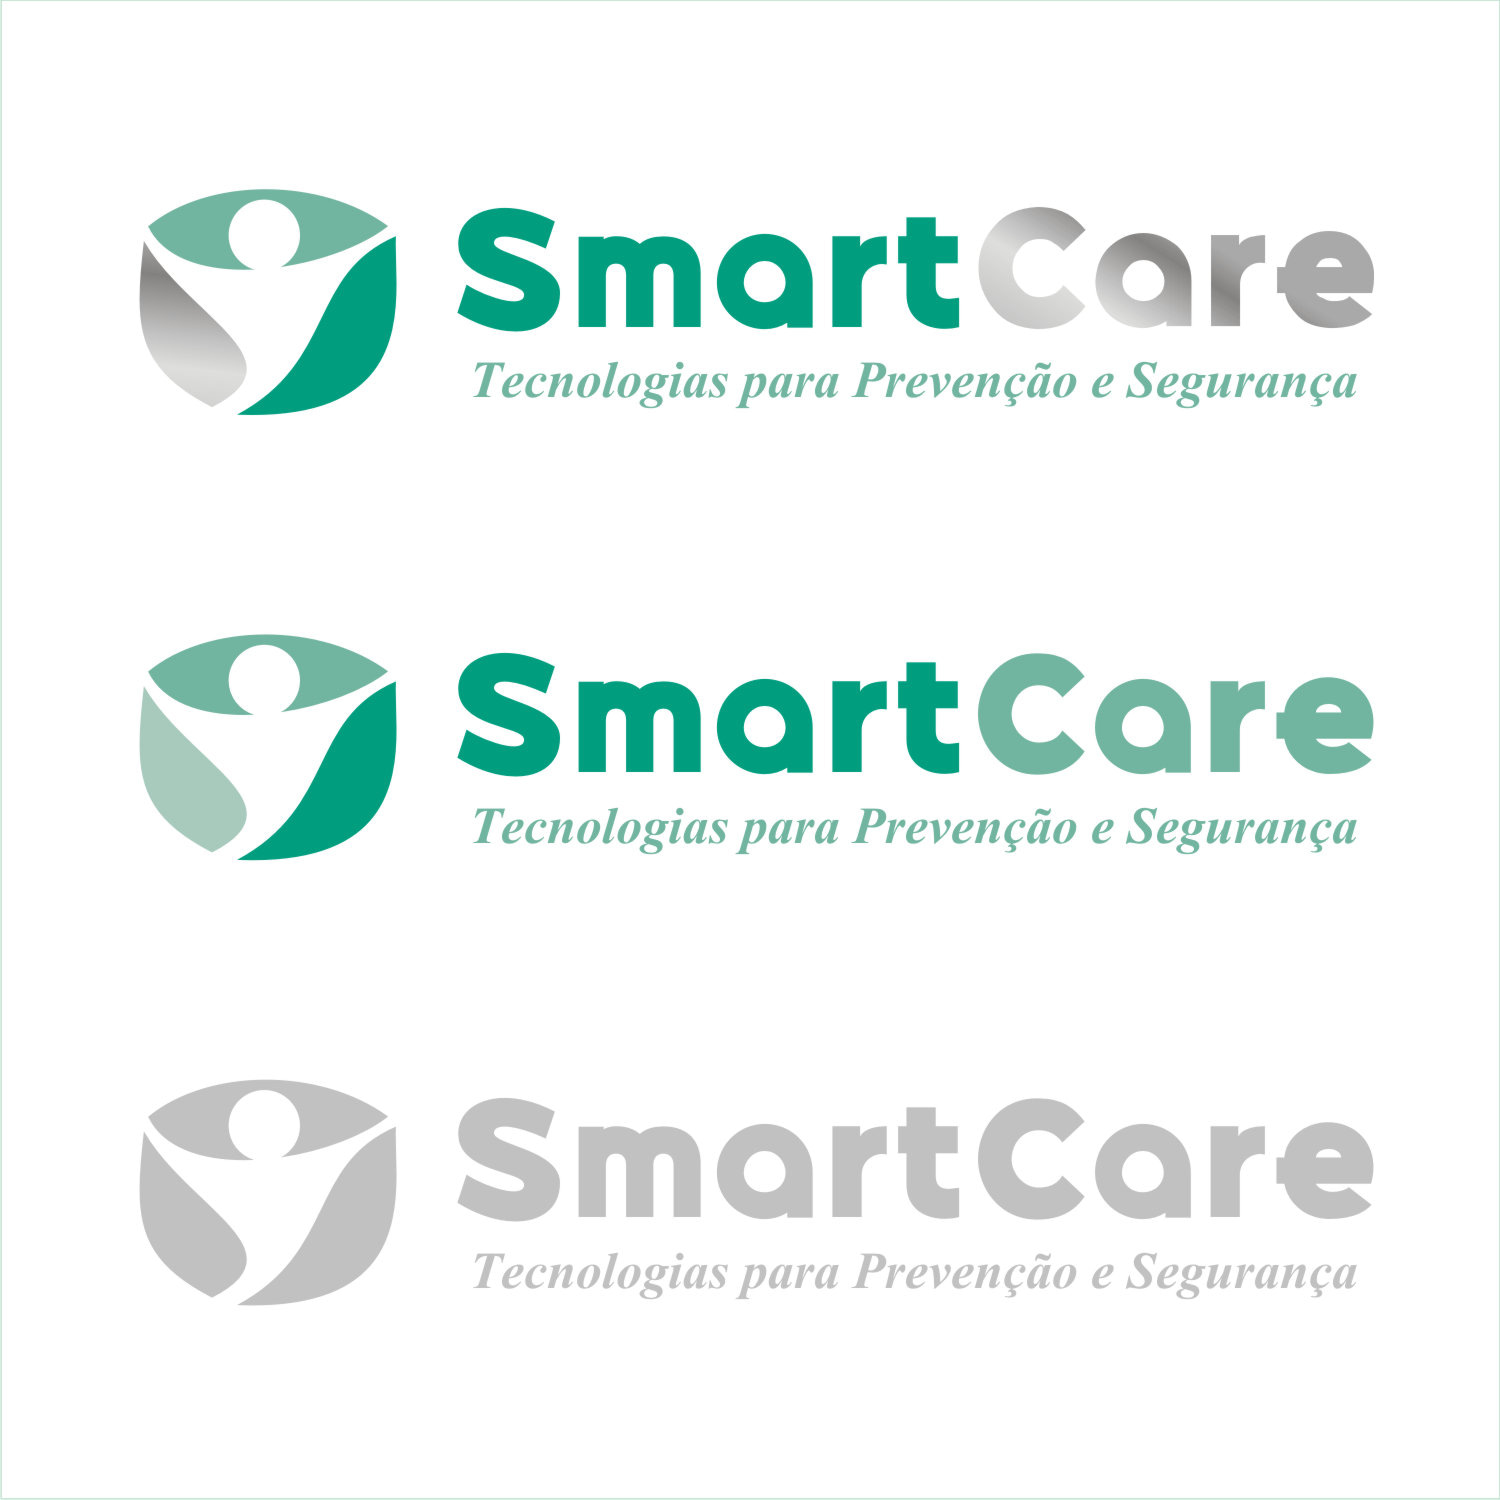 criamos logomarcas para empresas de saúde higienização médicos cirurgiões fisioterapeutas dermatologistas serviços gerais sanitização